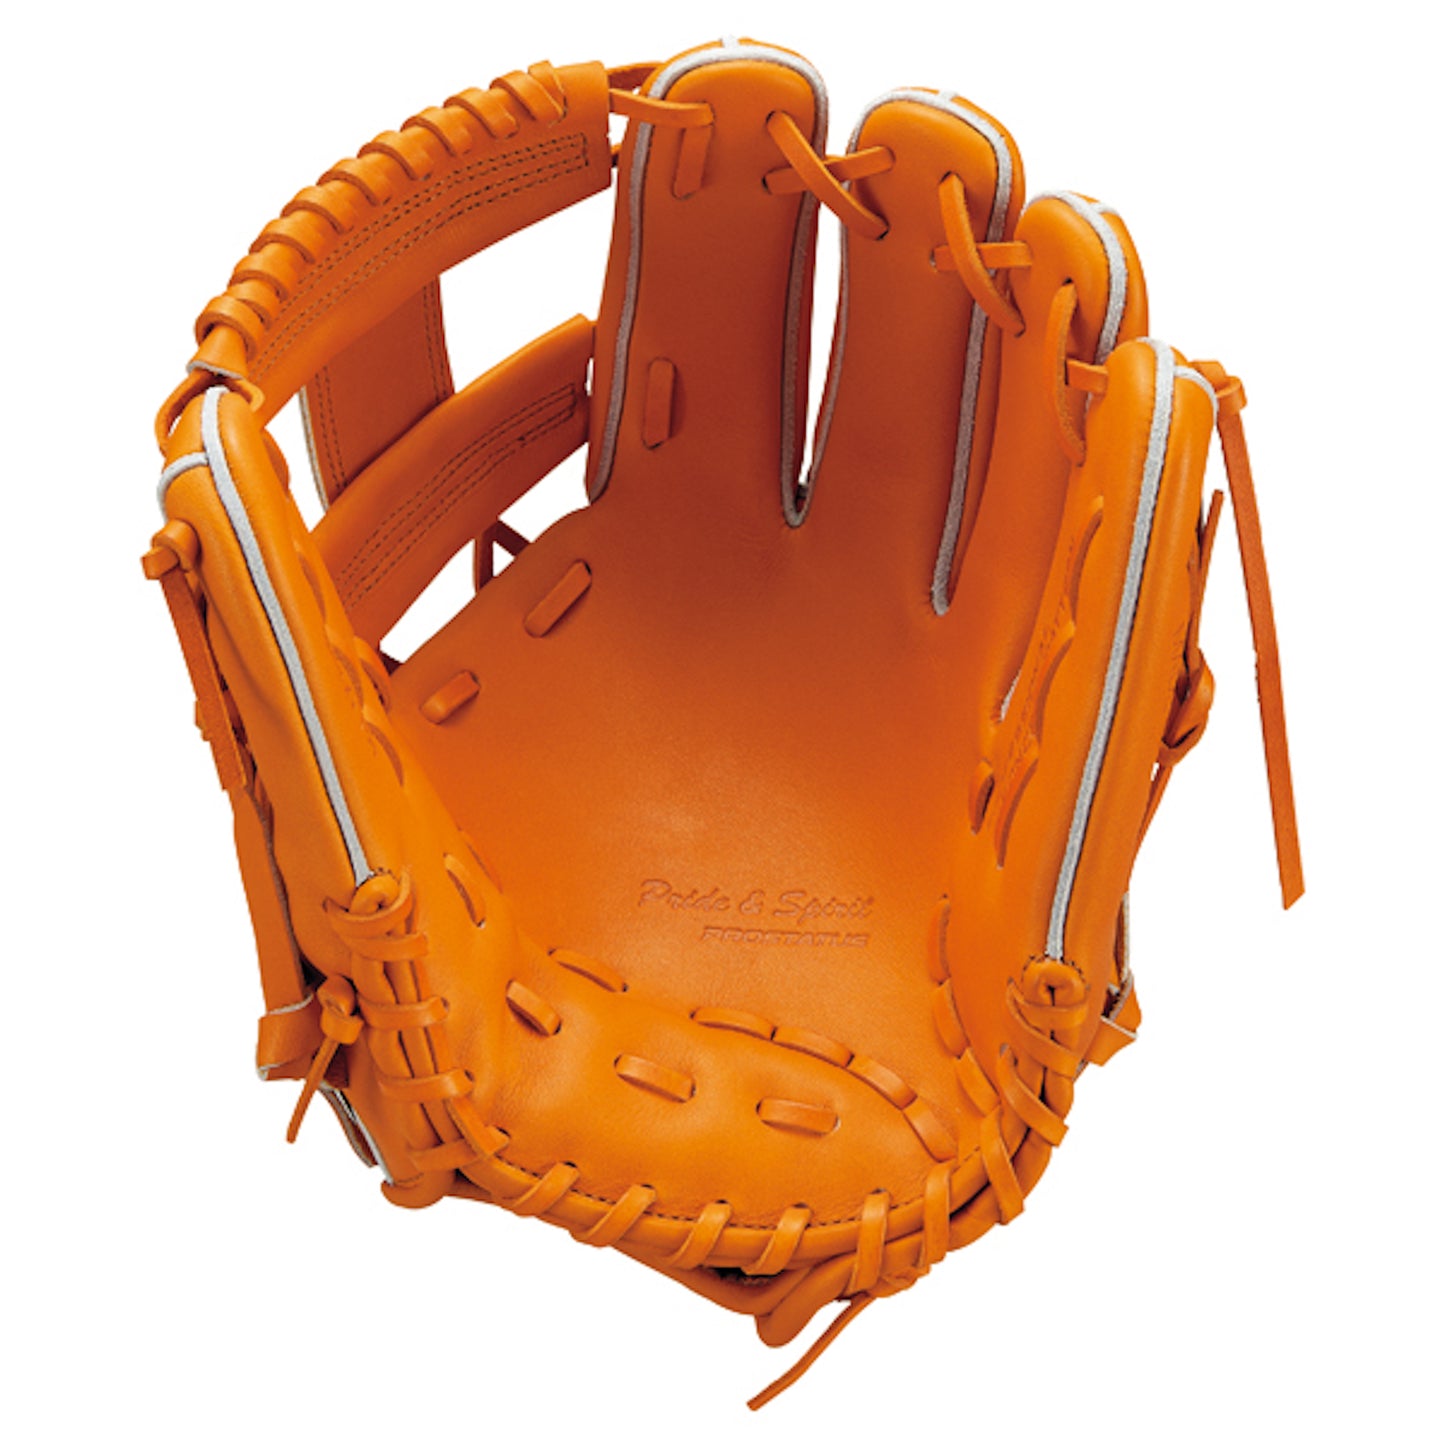 ZETT PROSTATUS Baseball Infield Glove BPROG766